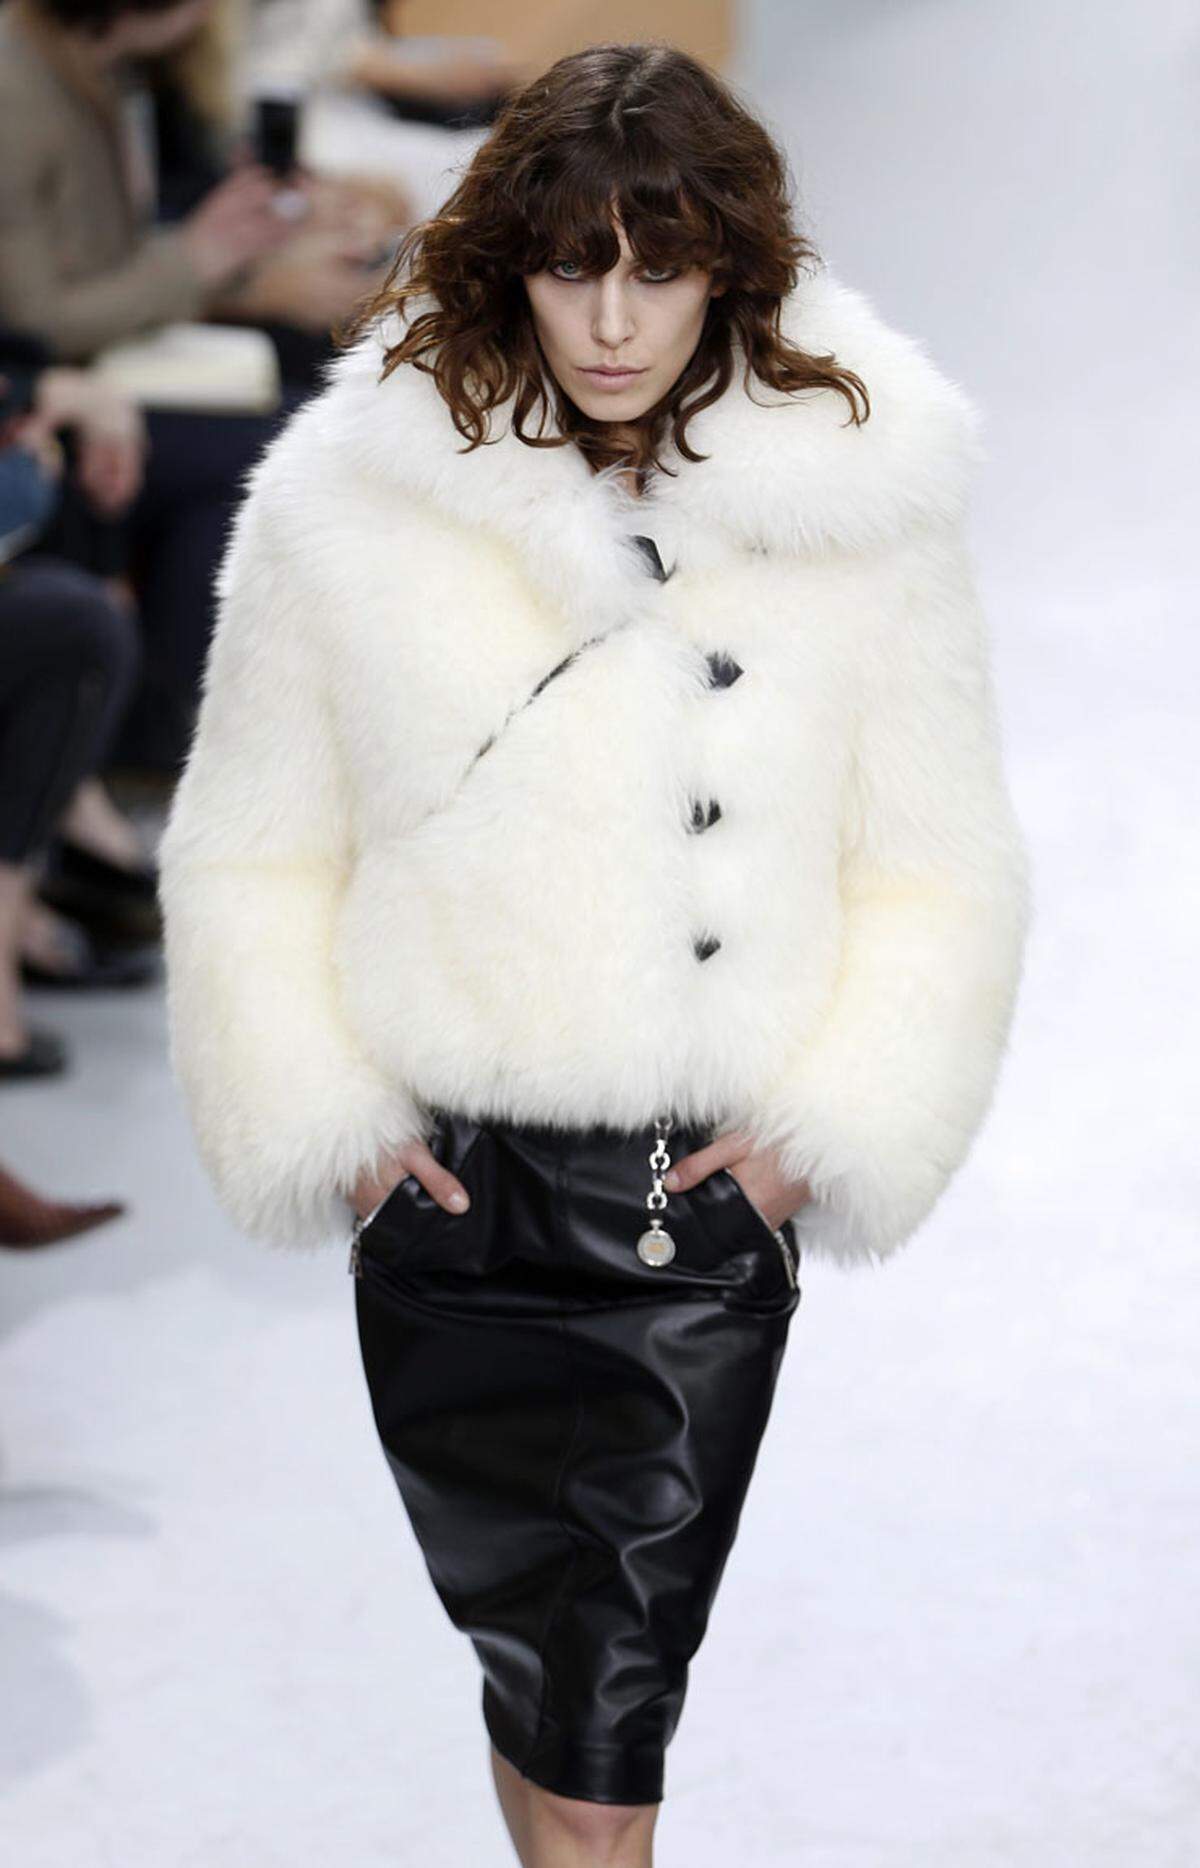 Der Eisbären-Chic ist bei Louis Vuitton vorherrschend ...